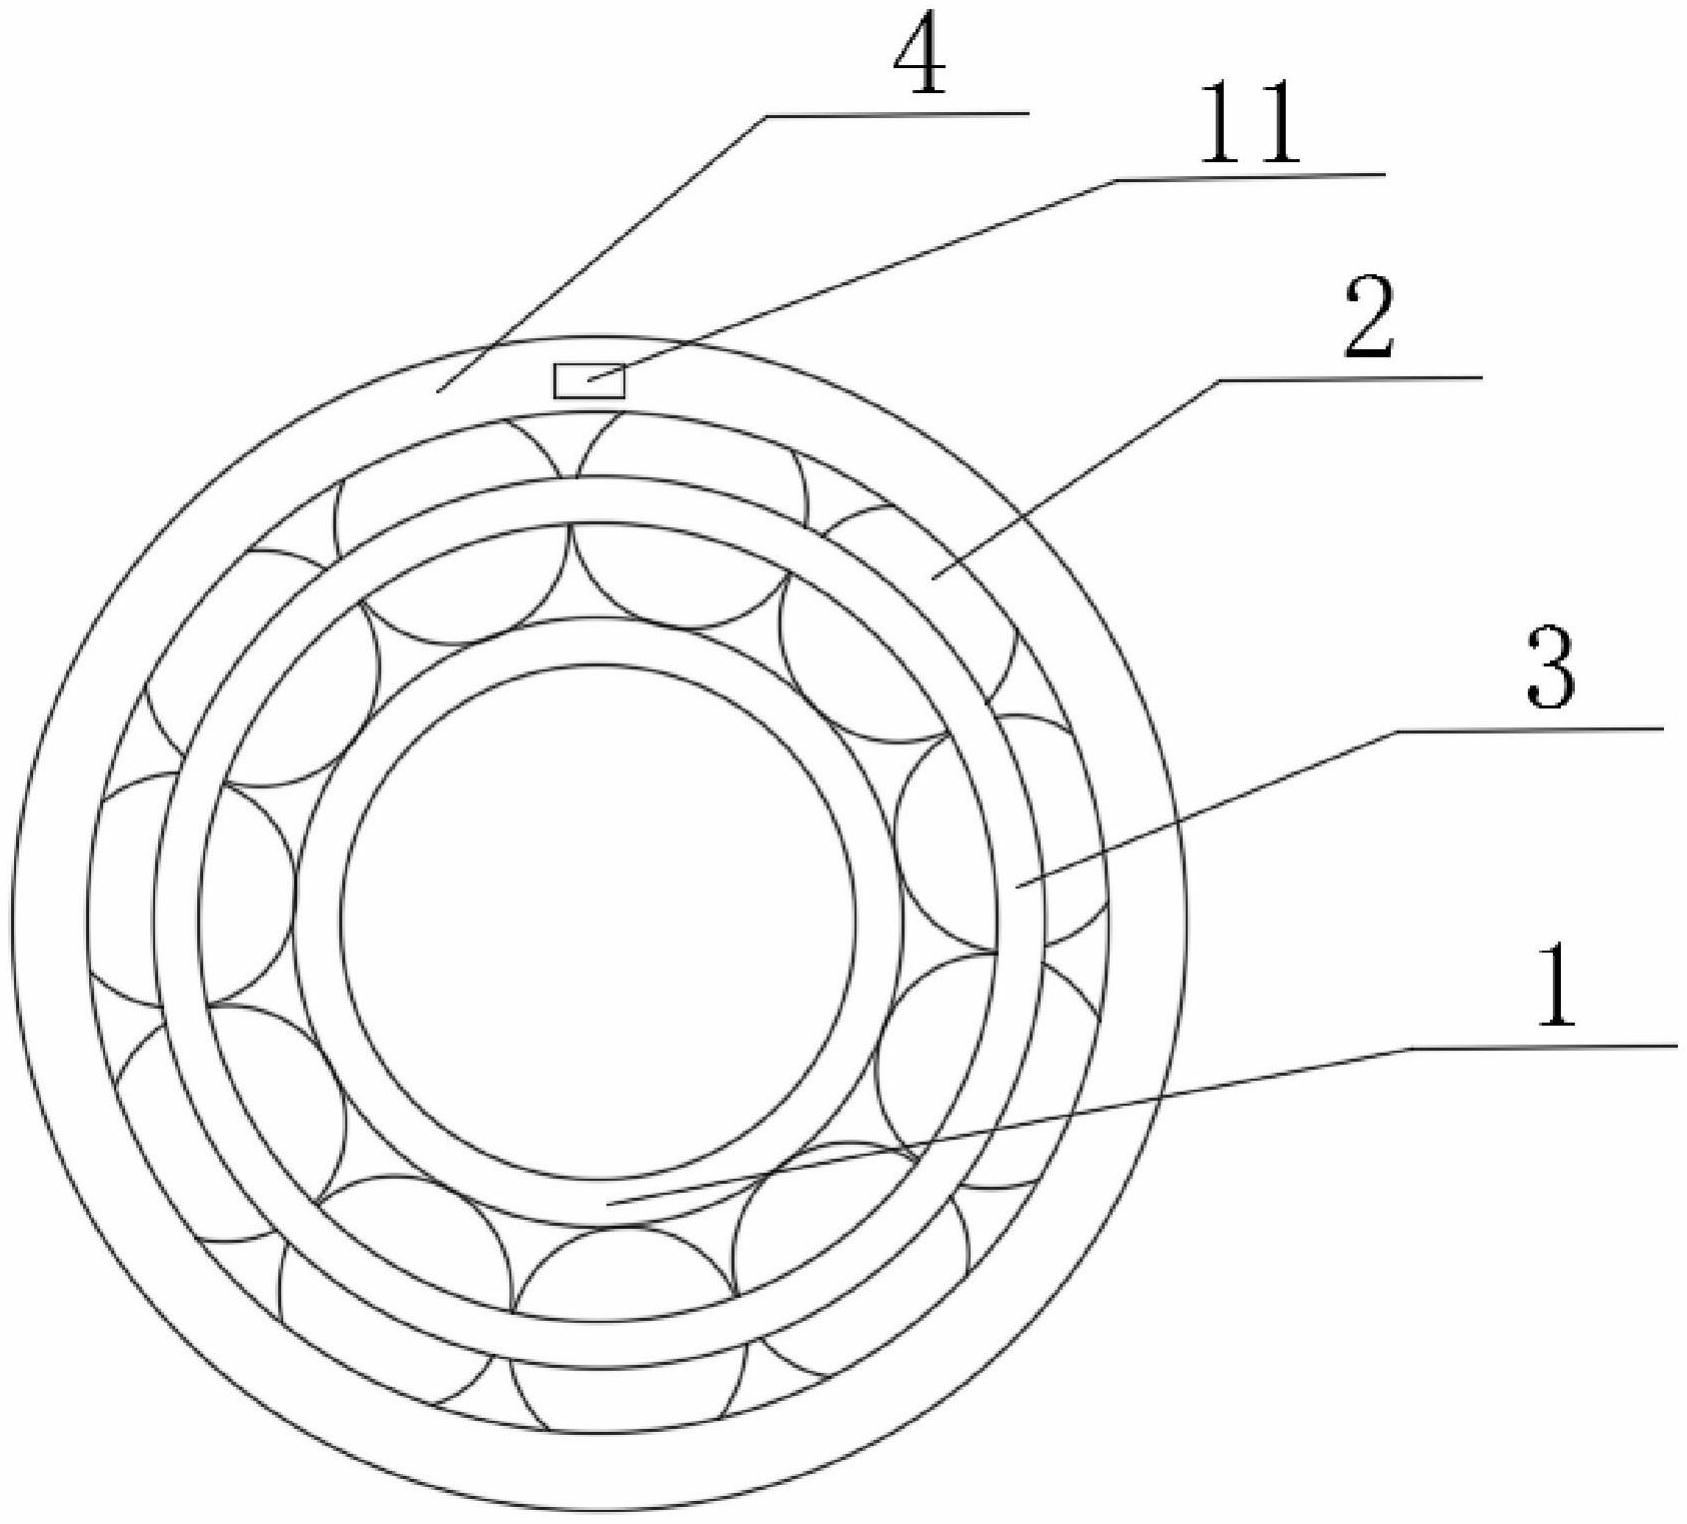 圆锥滚子轴承简化图图片